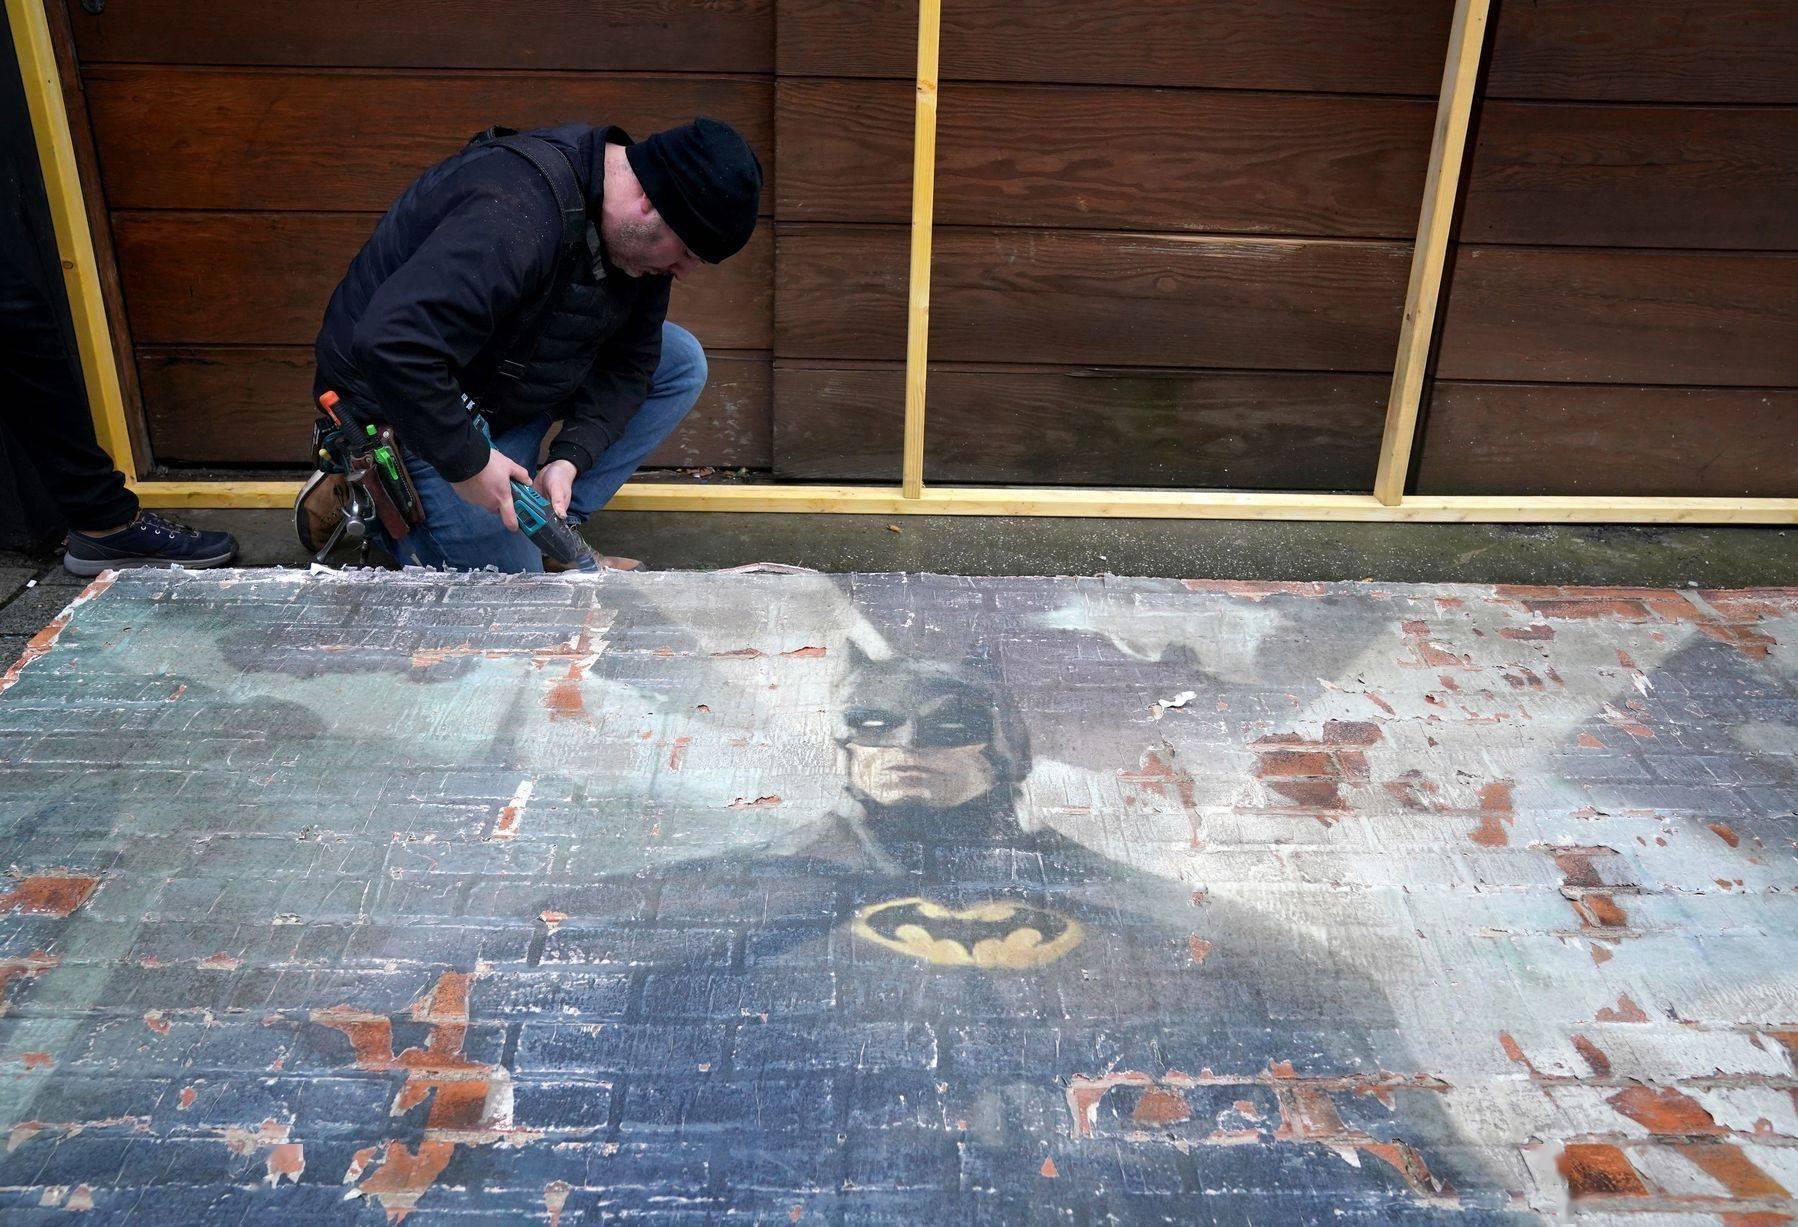 DC电影《蝙蝠女》苏格兰热拍 蝙蝠侠和罗宾“现身”片场